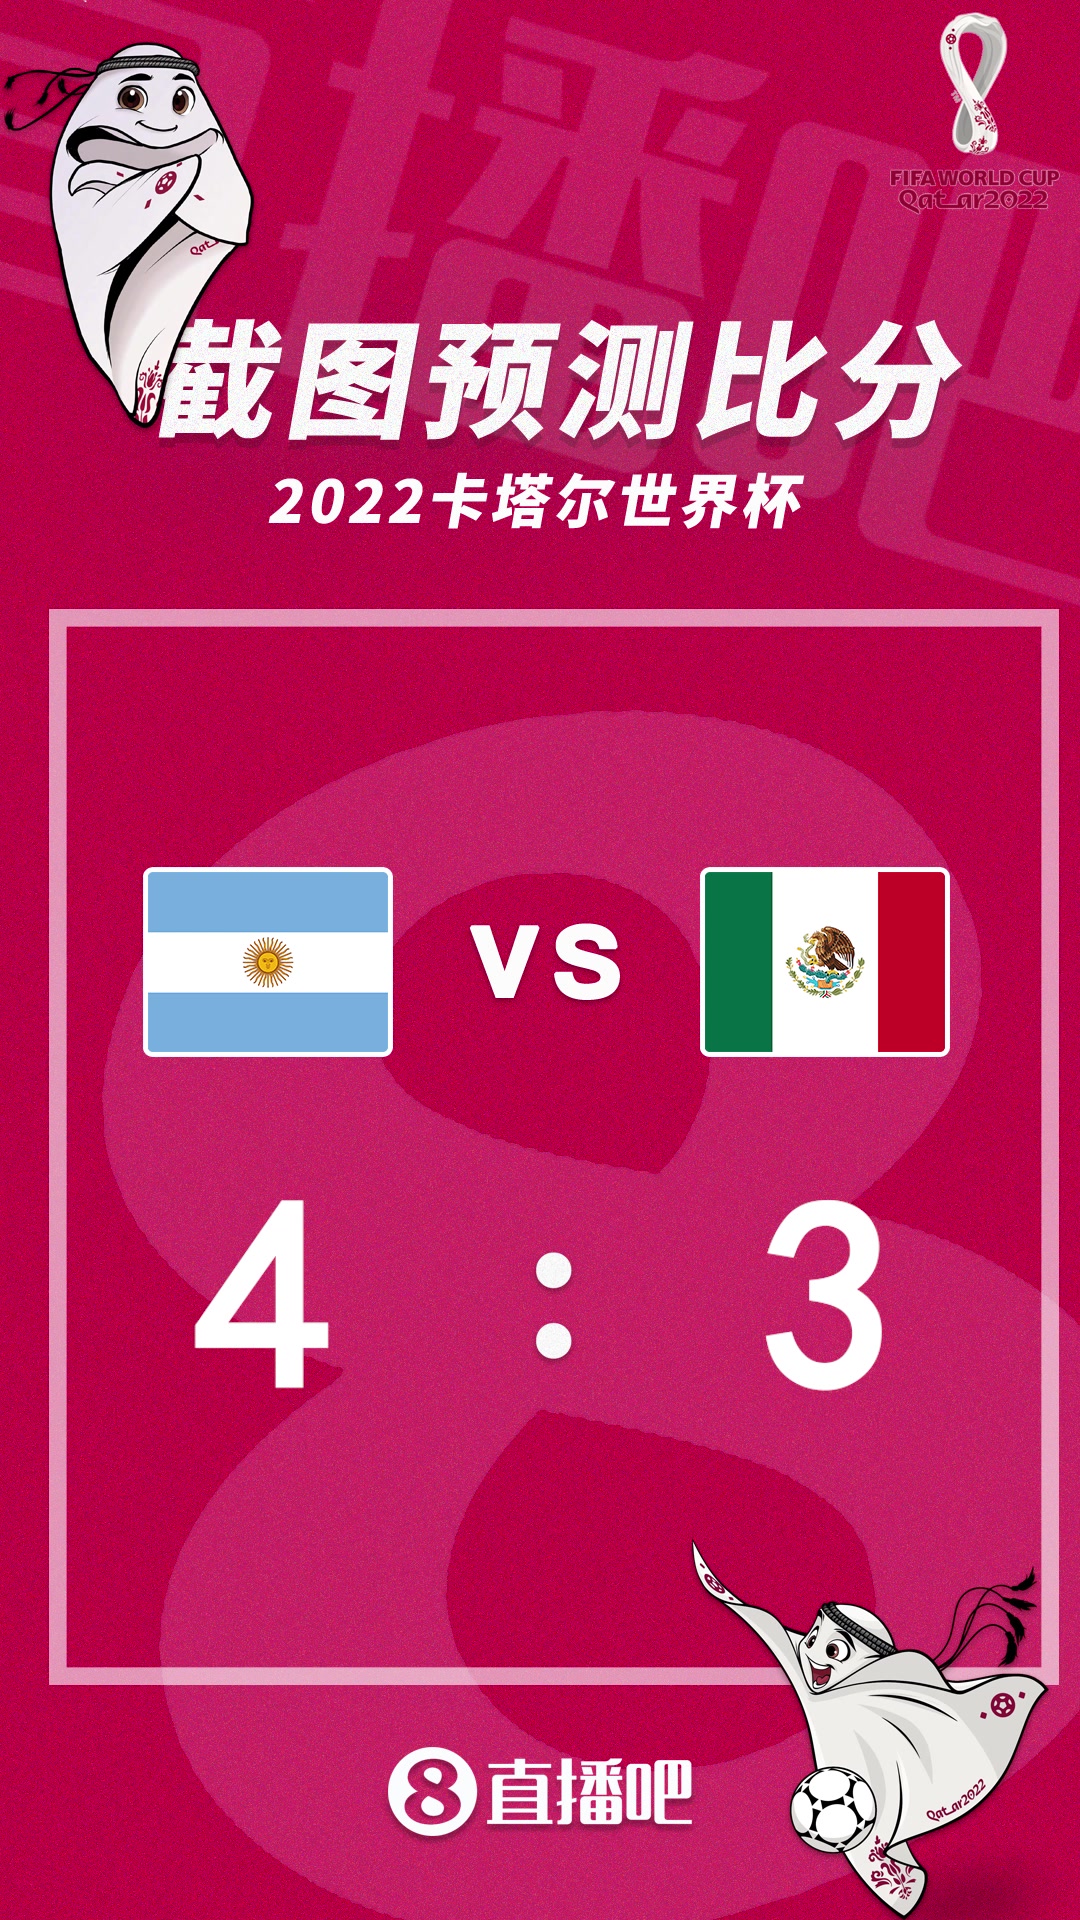 阿根廷能否扭转局面？阿根廷vs墨西哥比分预测